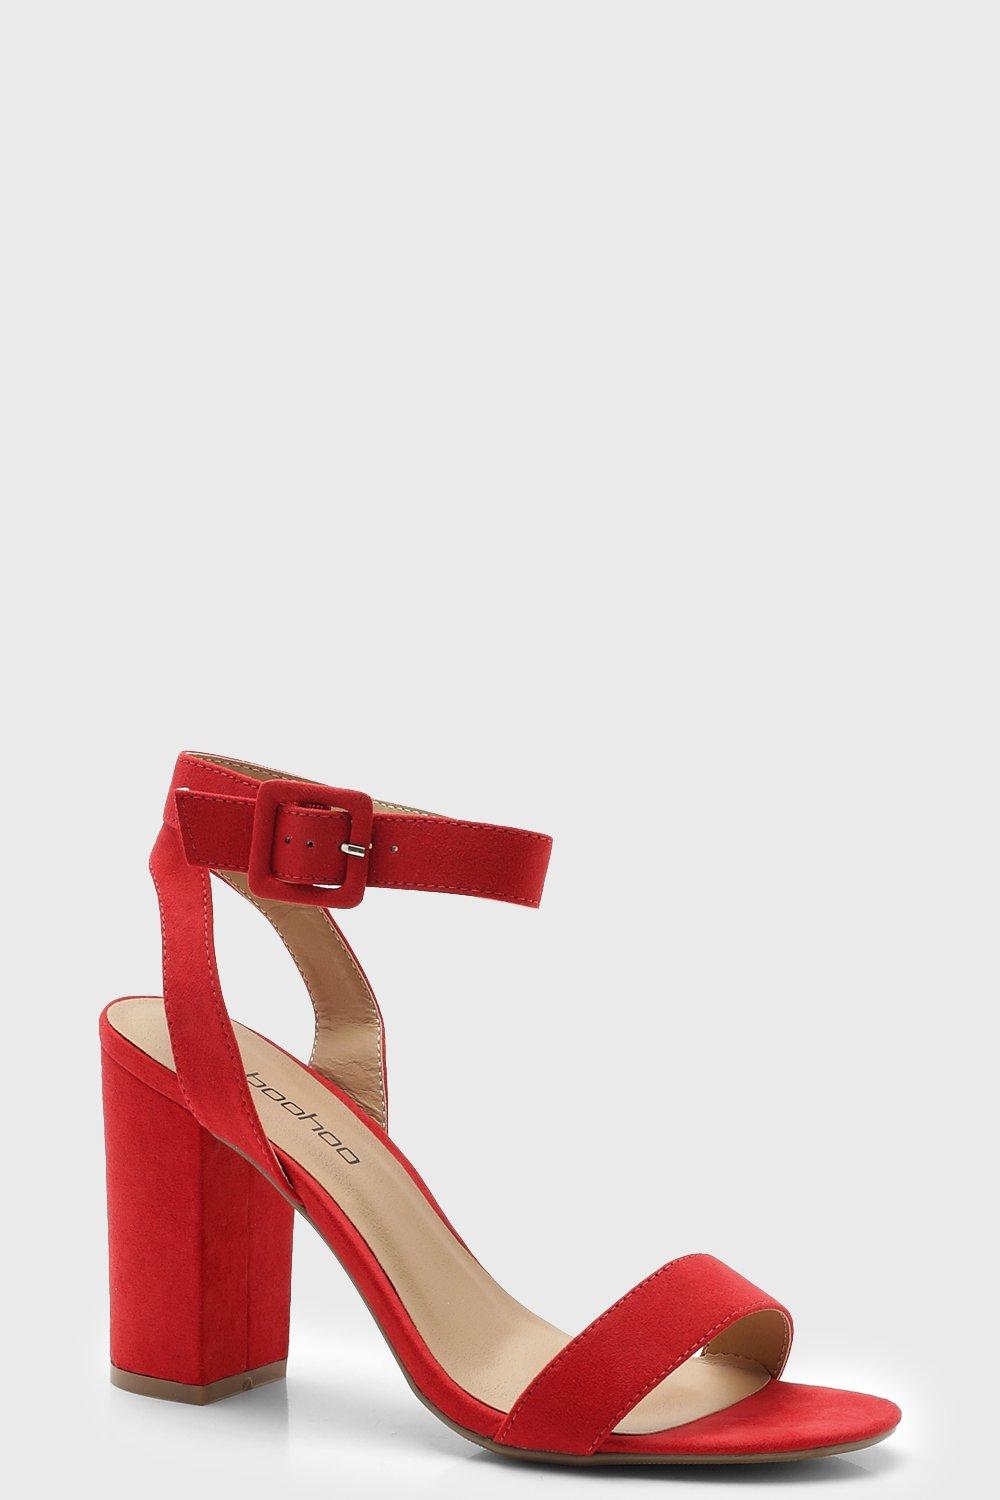 red block heels uk